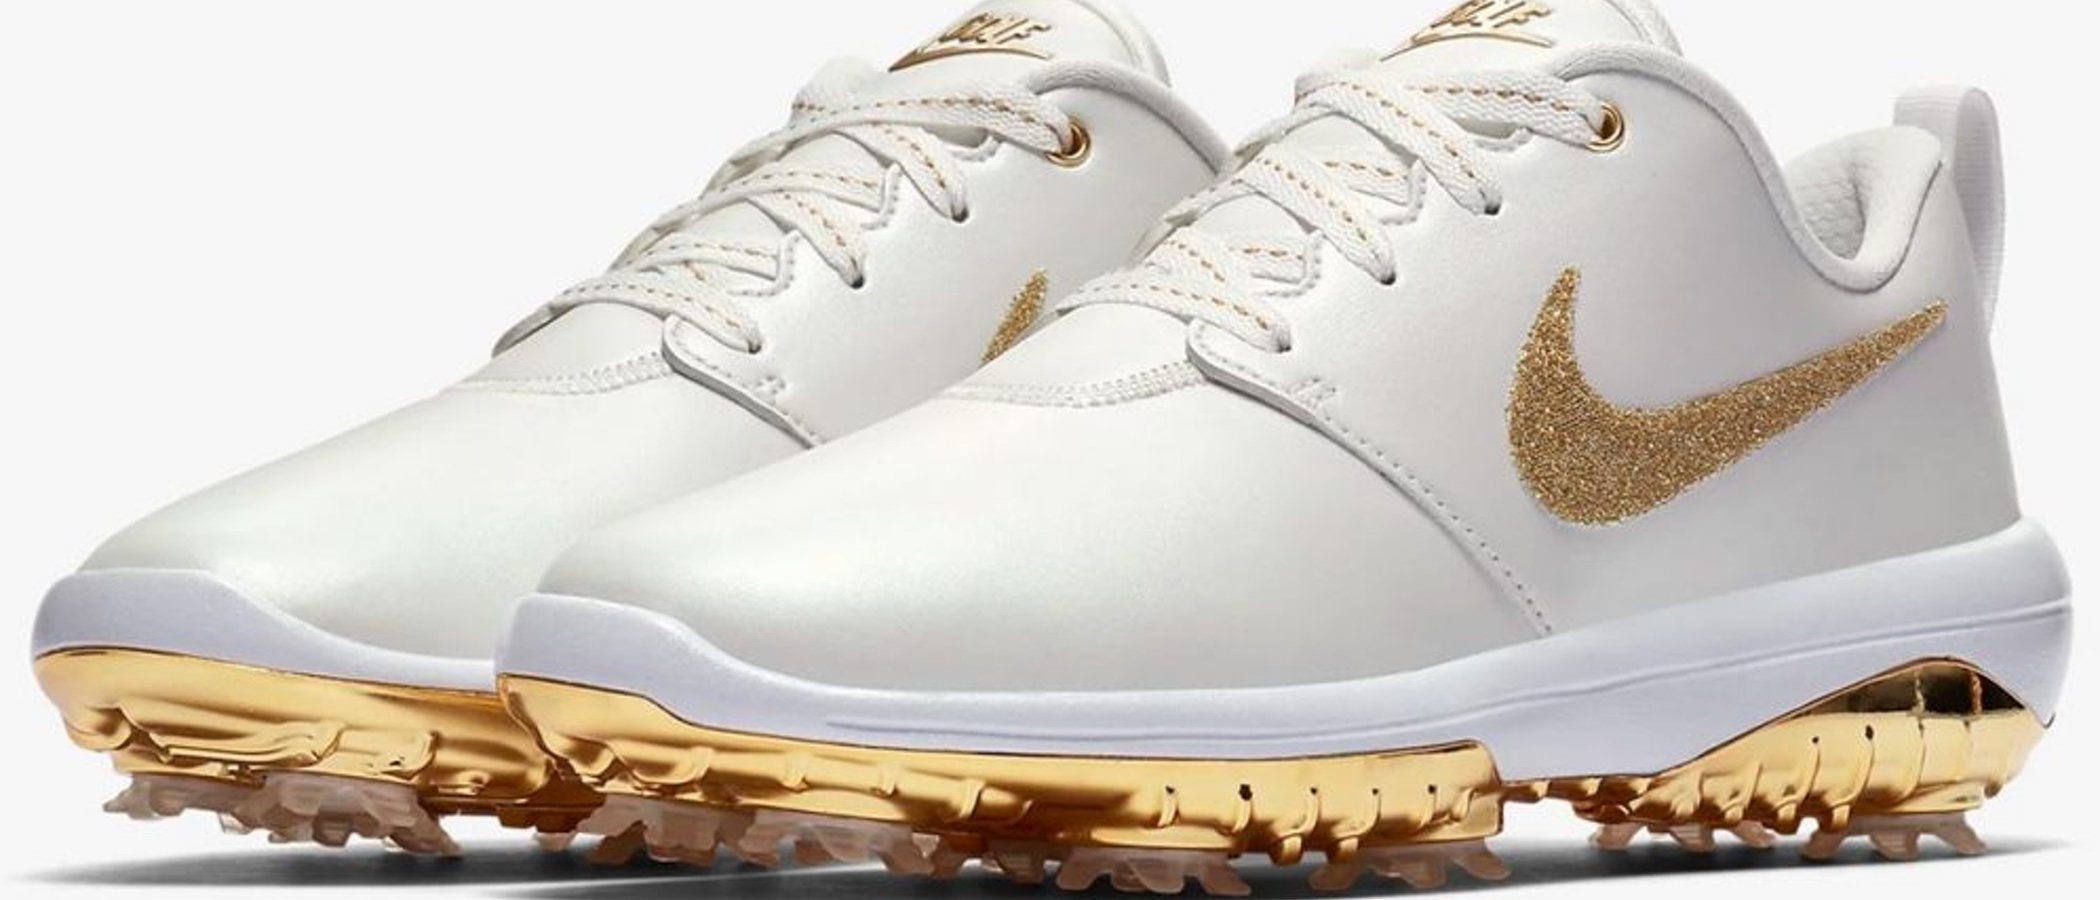 Zapatillas de golf cubiertas de Swarovski: lo último y más fashion de Nike